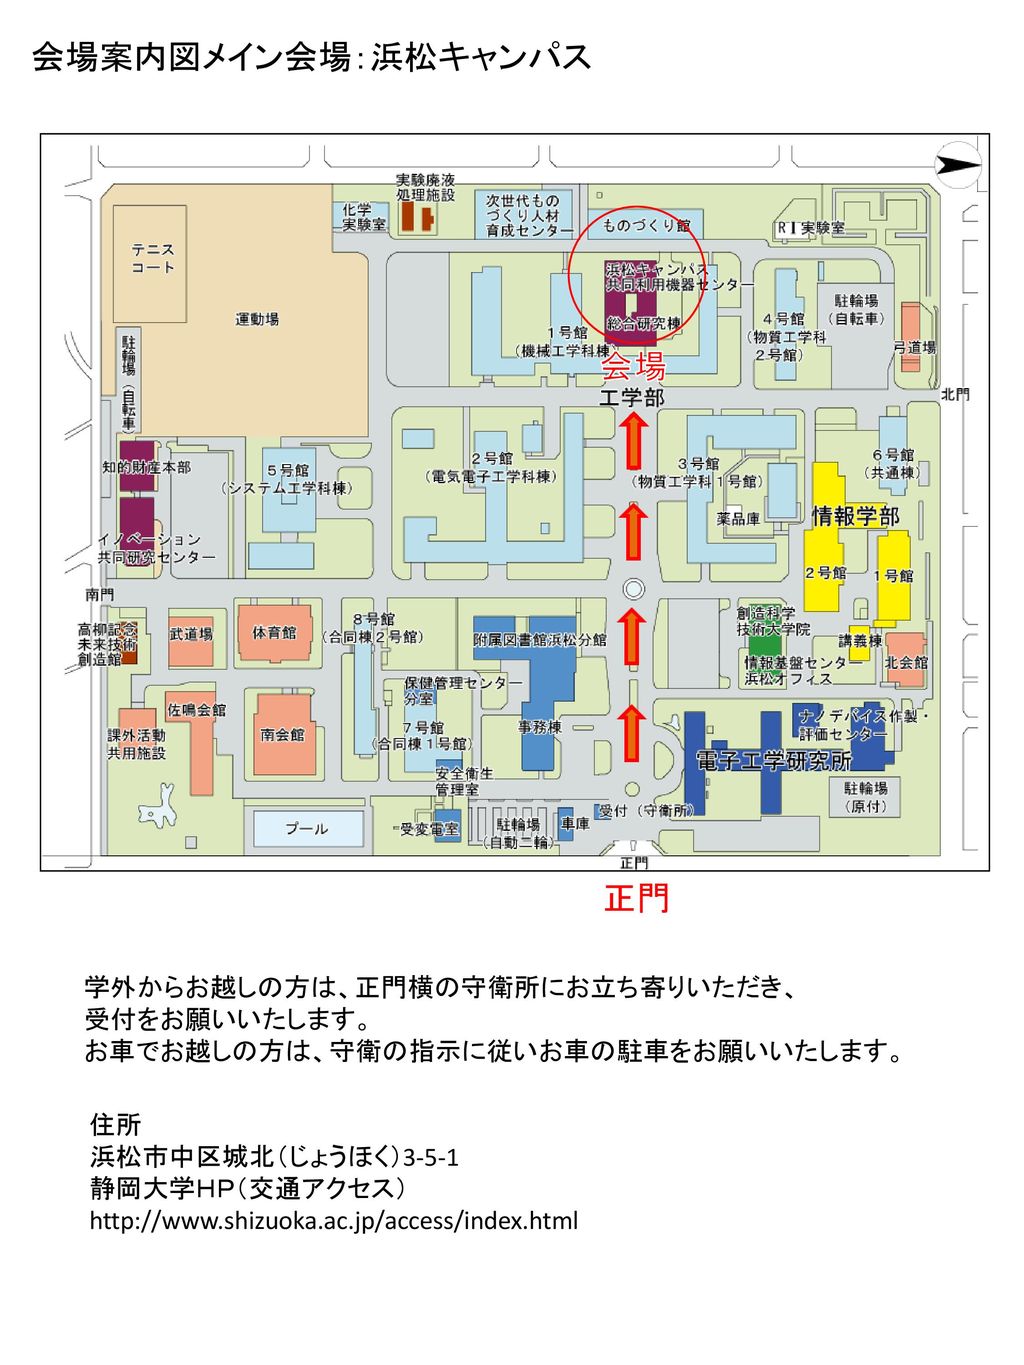 会場案内図メイン会場：浜松キャンパス 会場 正門 学外からお越しの方は、正門横の守衛所にお立ち寄りいただき、 受付をお願いいたします。